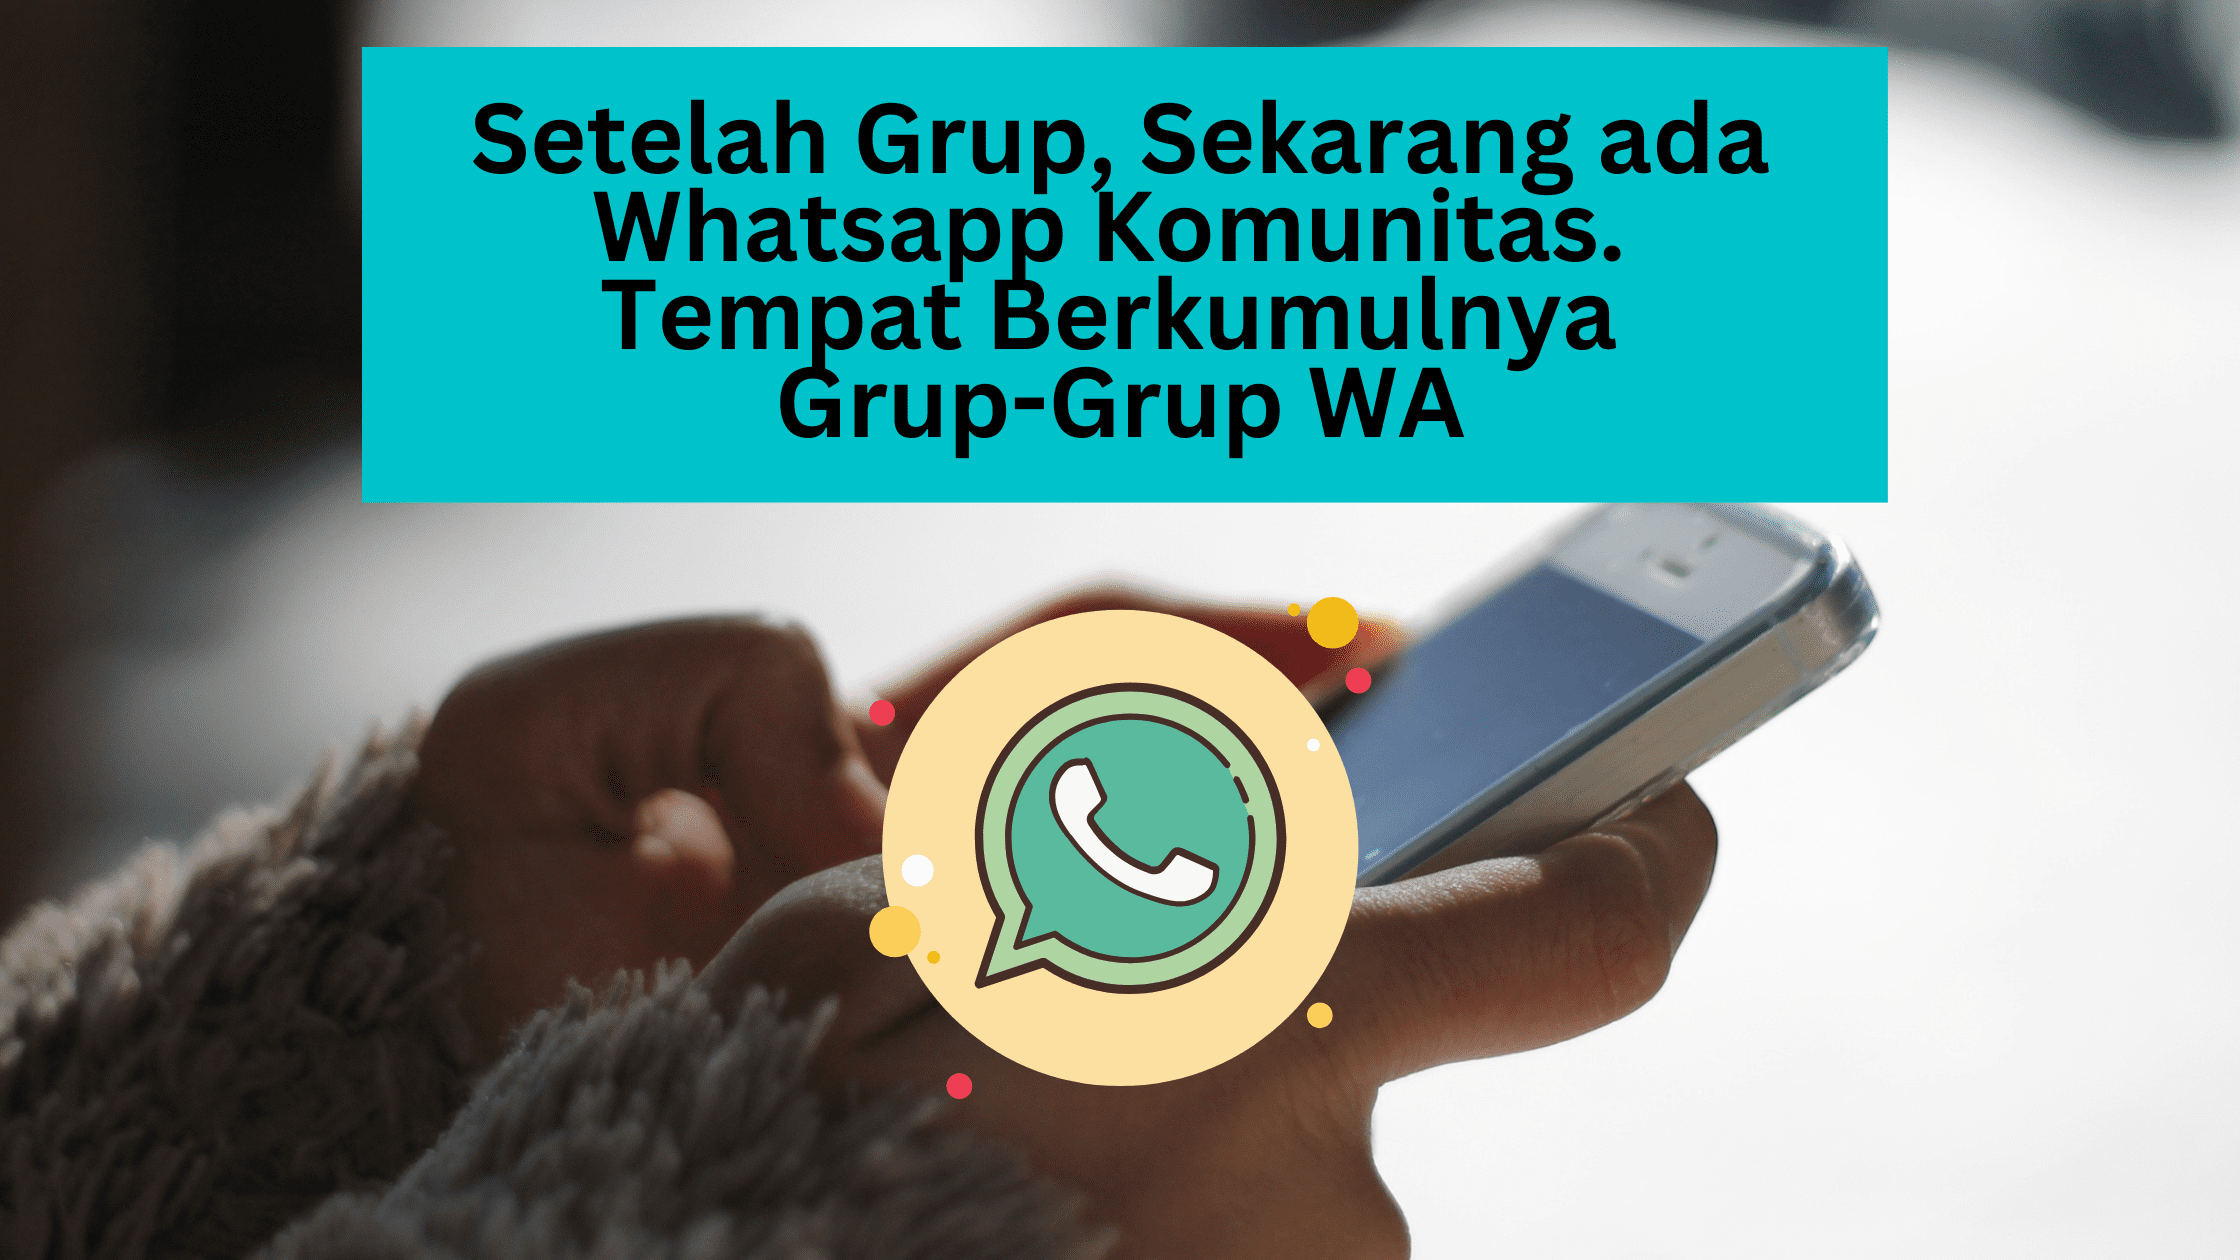 Ada otp whatsapp сообщение